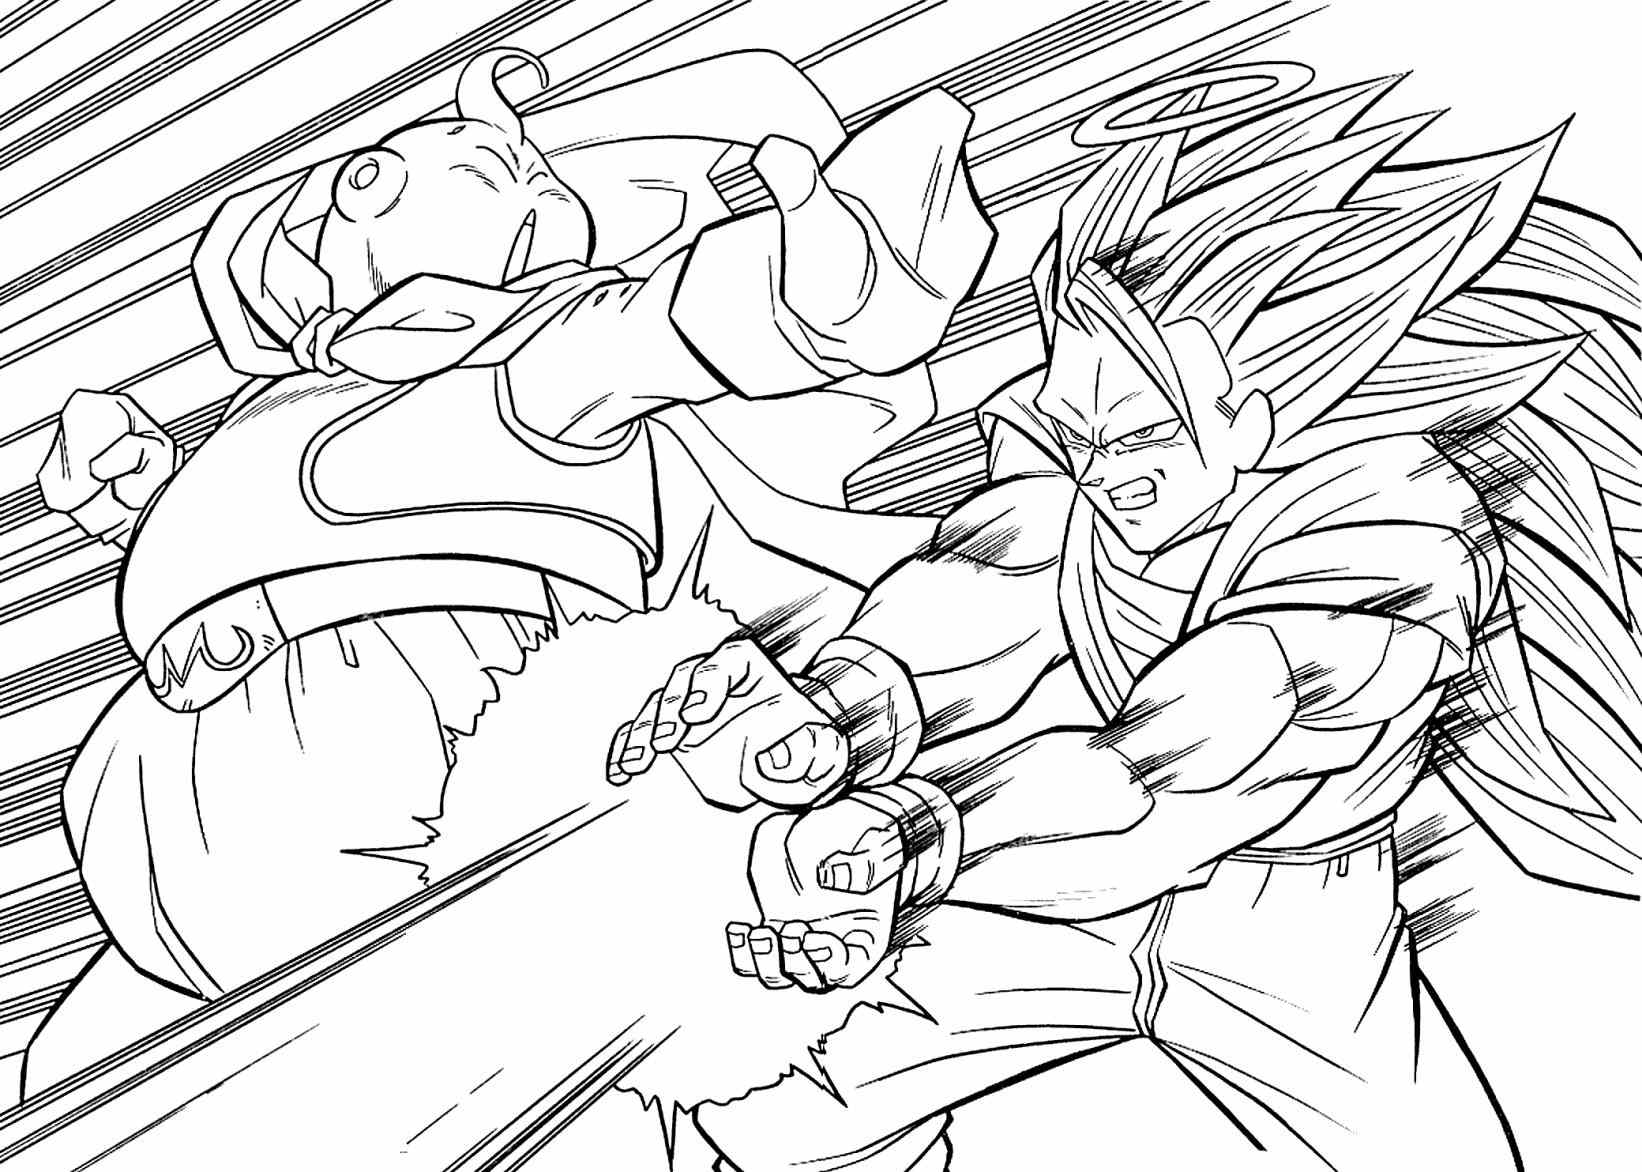 Goku Super Saiyan 3 Coloring Pages at GetColorings.com | Free printable